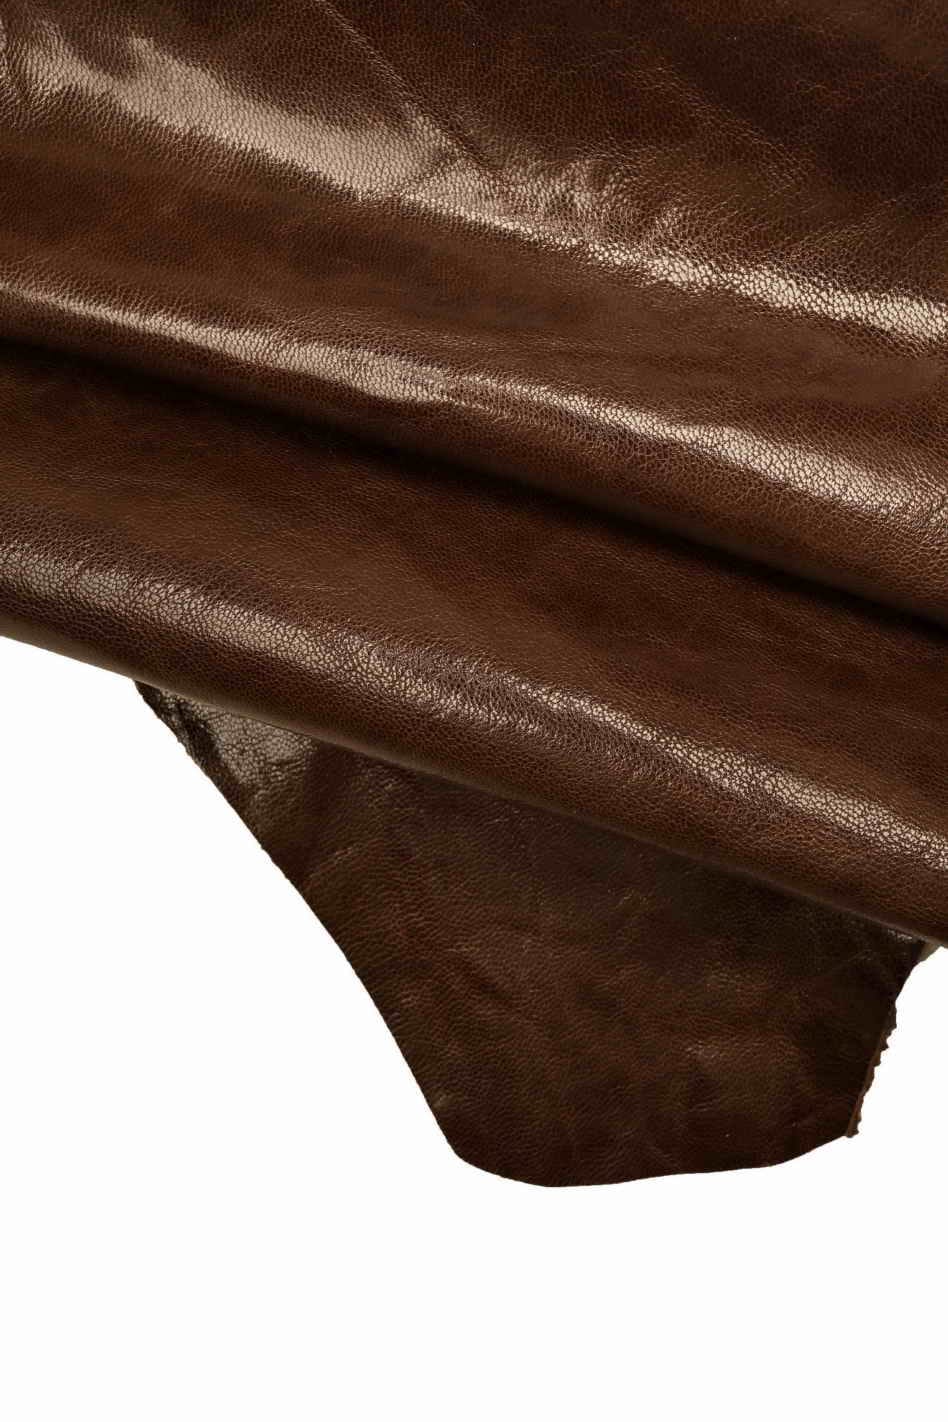 BROWN super SOFT nappa leather skin, glossy wrinkled sheepskin, high  quality lambskin